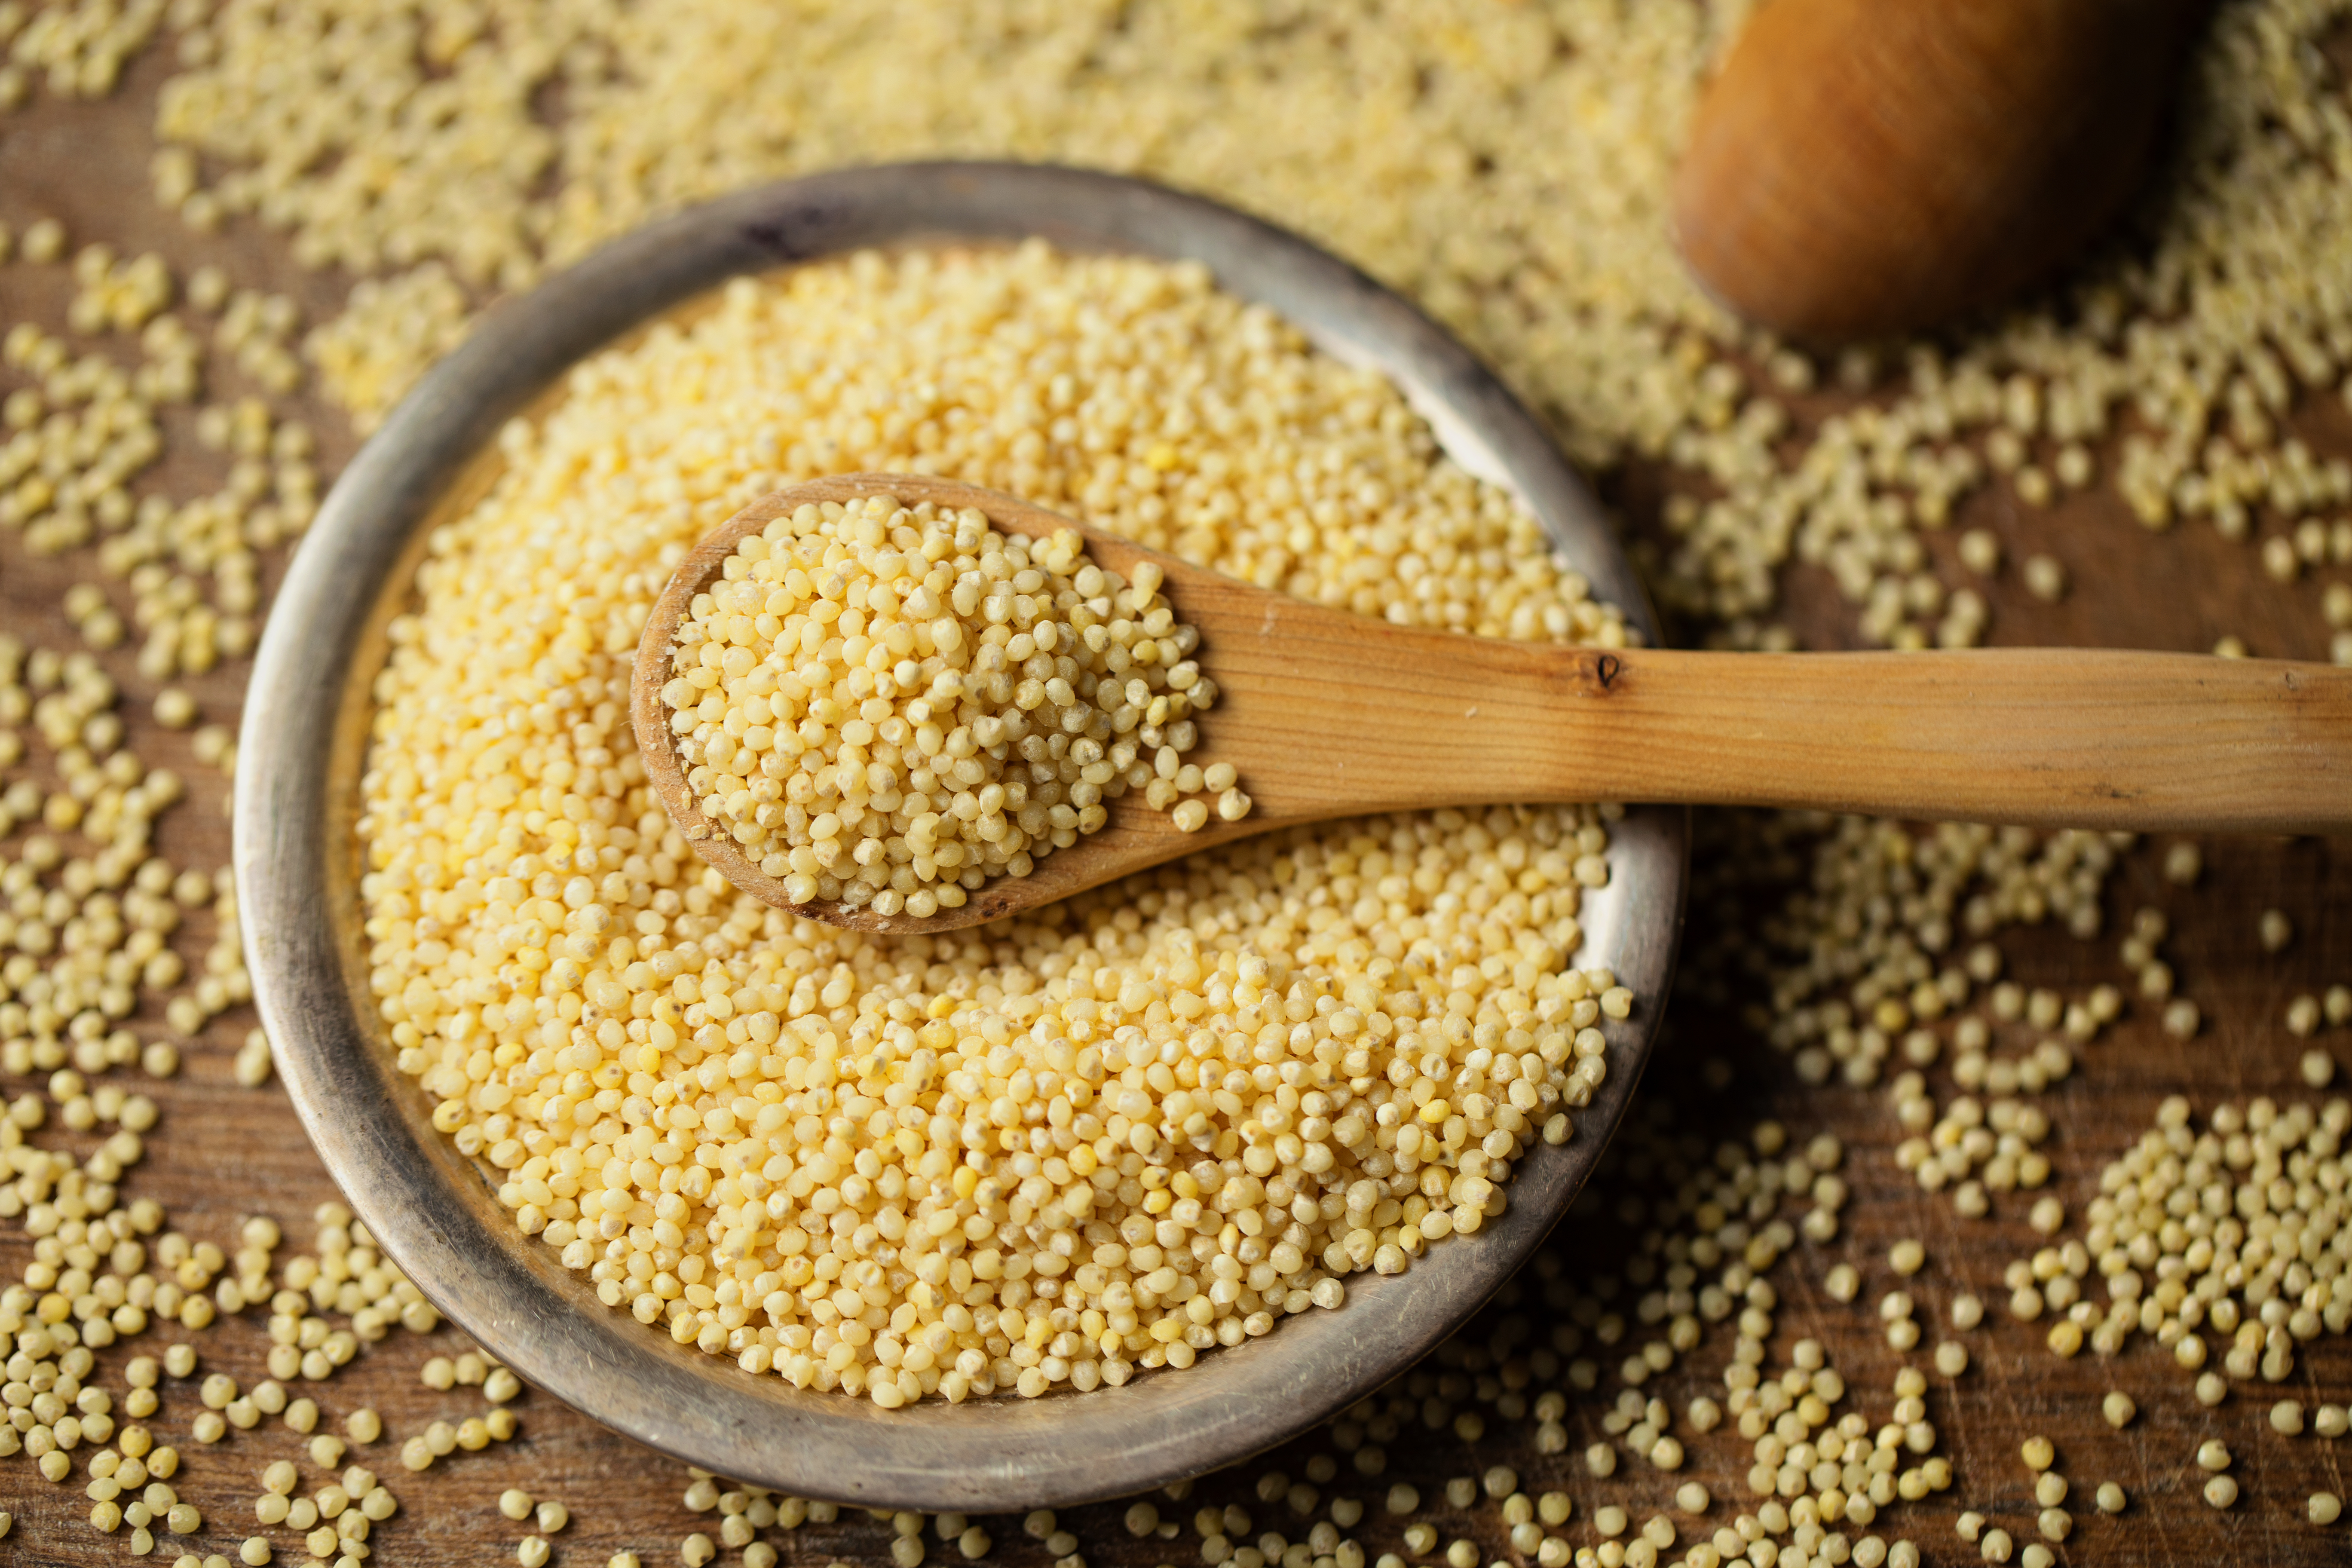 Bowl of millet grains